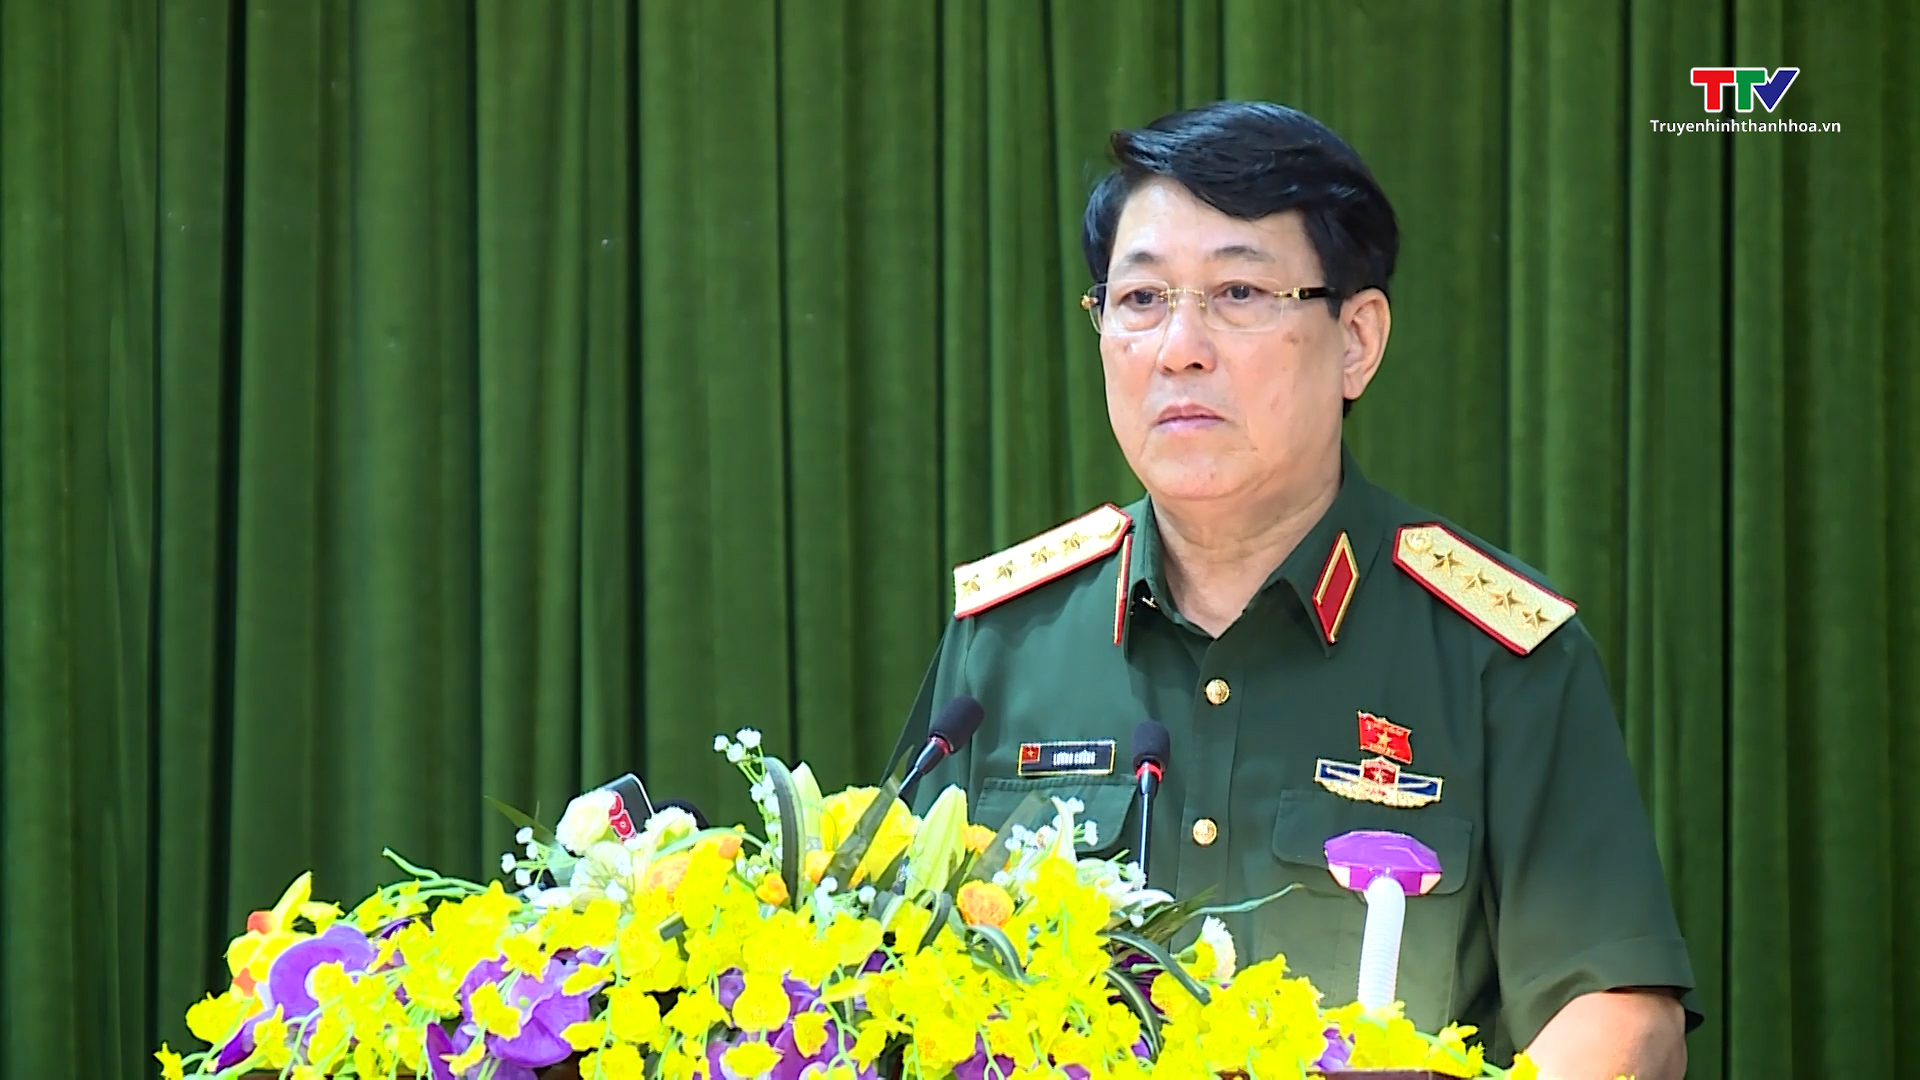 Đại tướng Lương Cường, Ủy viên Bộ Chính trị, Chủ nhiệm Tổng cục Chính trị Quân đội Nhân dân Việt Nam tiếp xúc cử tri tại Thanh Hóa - Ảnh 7.